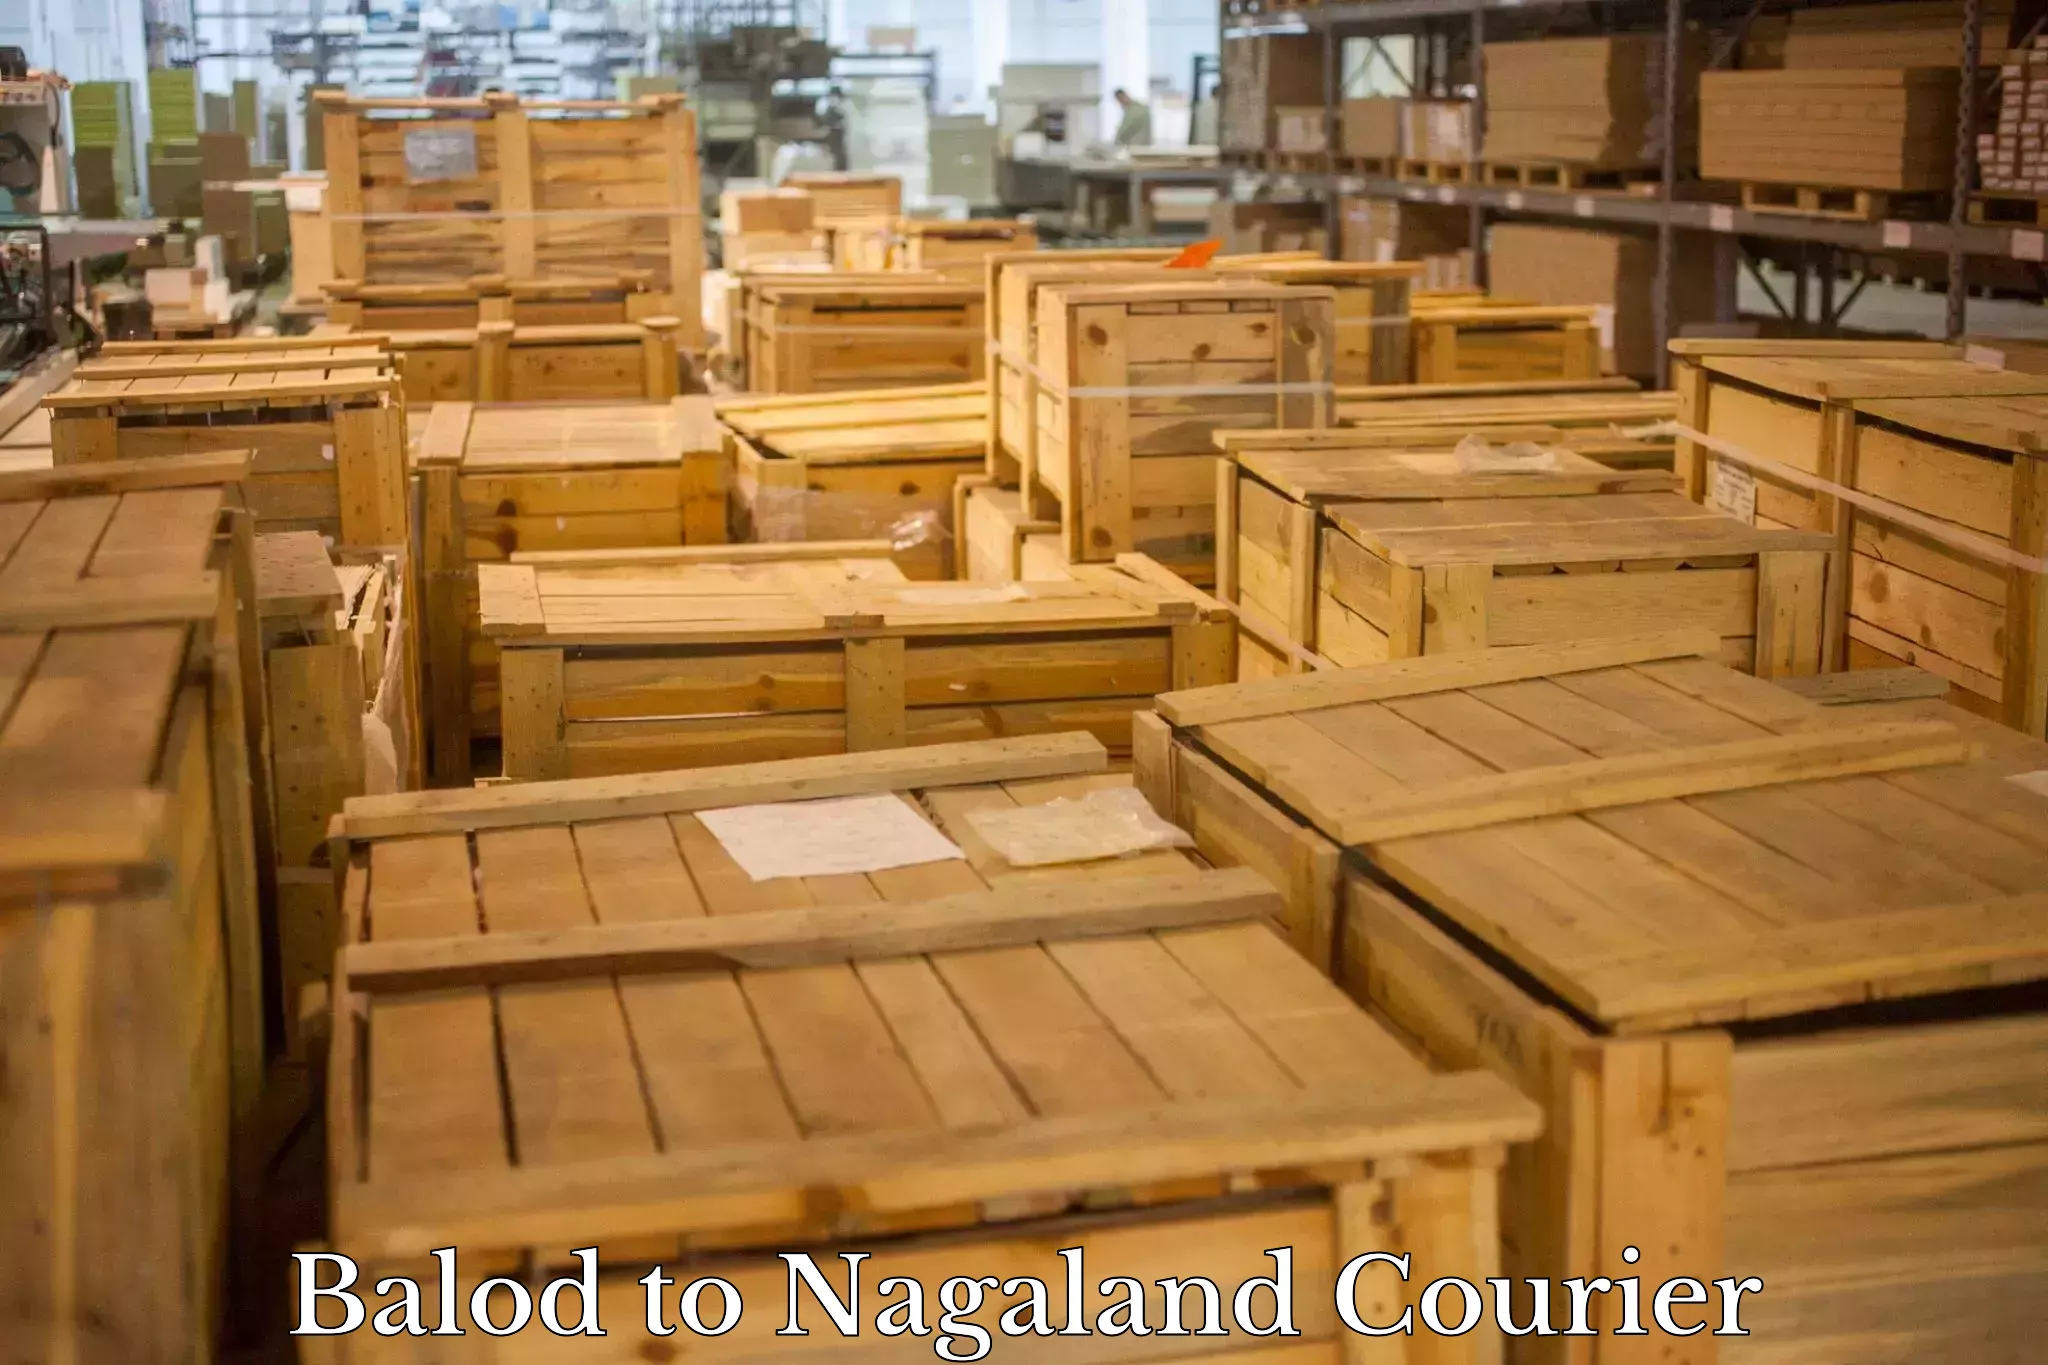 Customer-centric shipping in Balod to Nagaland